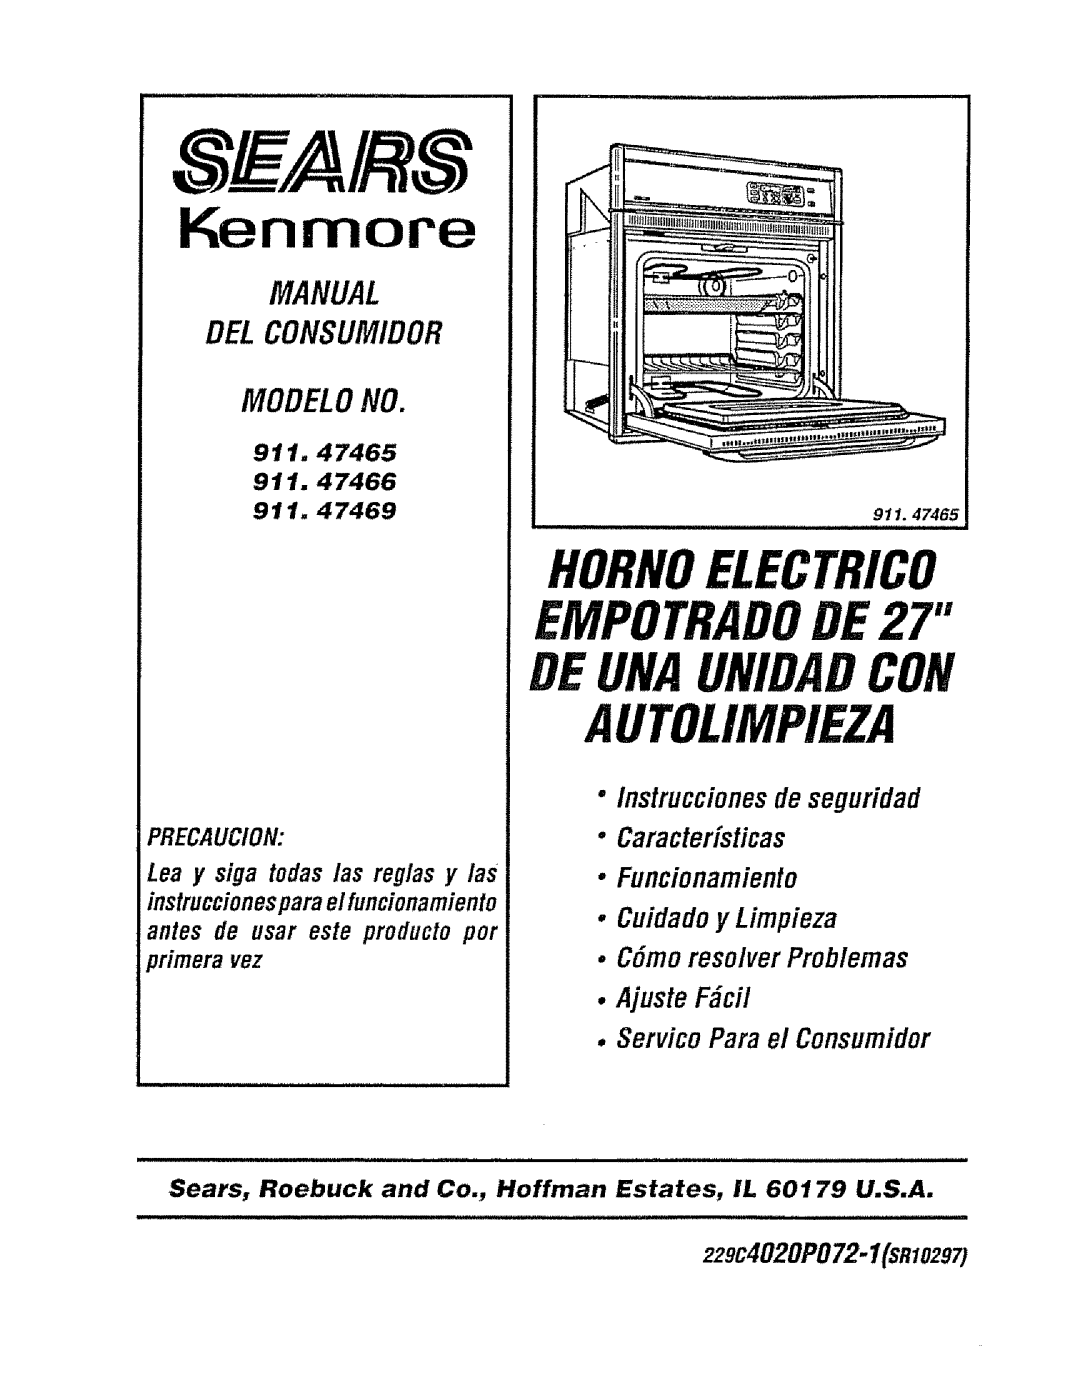 Sears 911.47465 Autolimpieza, Hornoelectrico, Modelono, Manual Del Consumidor, Kenmore, EMPOTRADODE27, Deunaunidad Con 